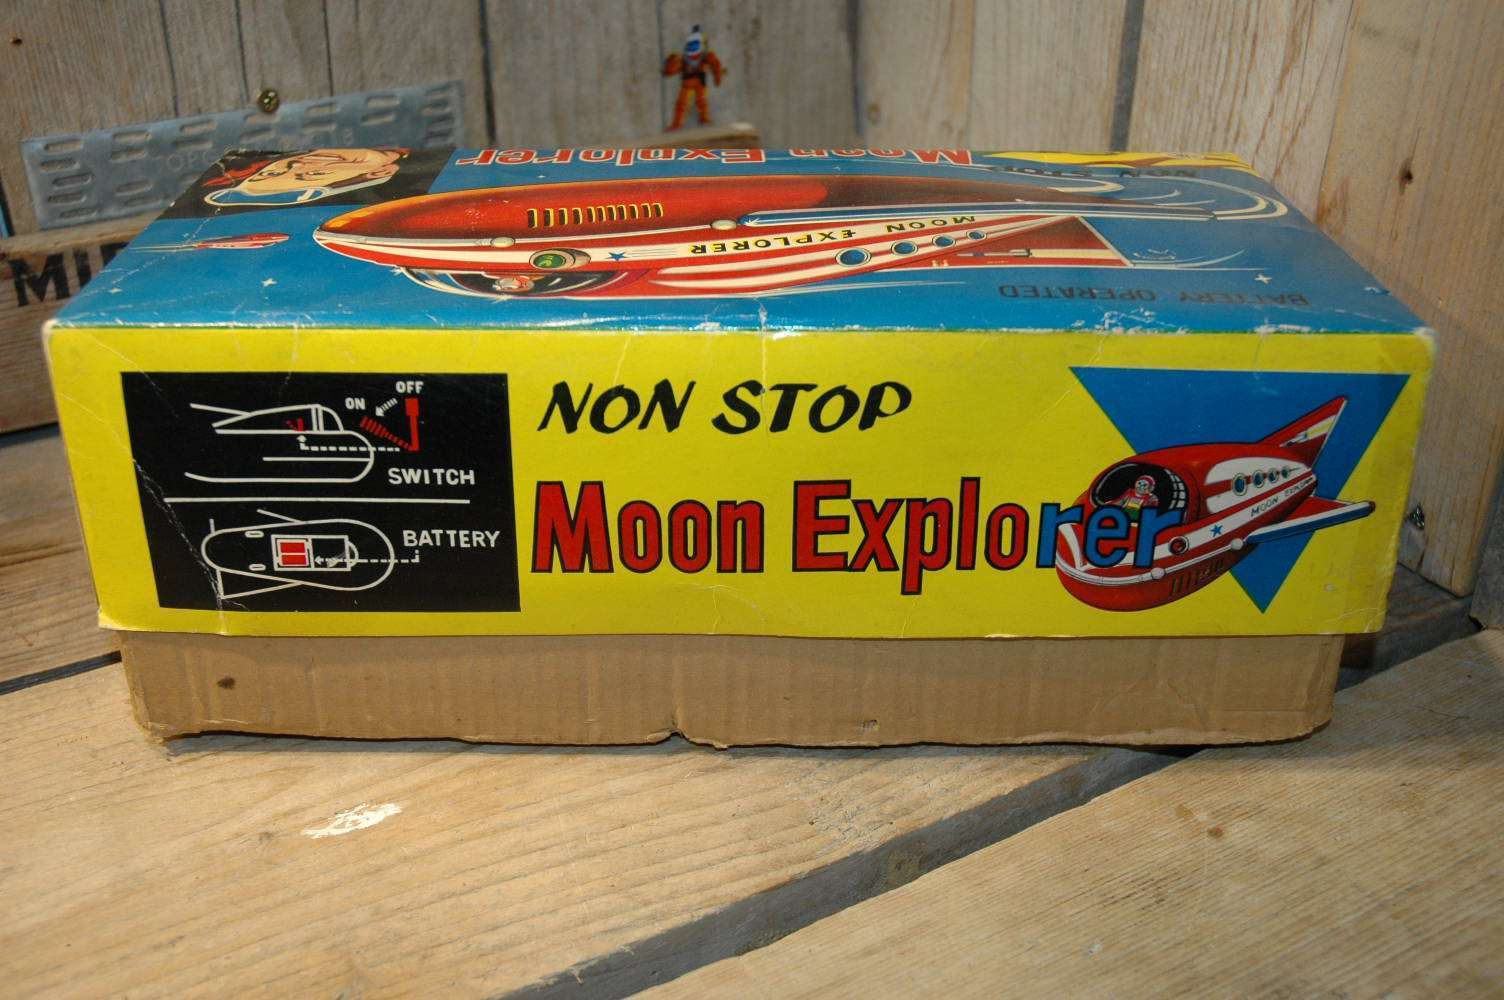 Modern Toys - Non Stop Moon Explorer